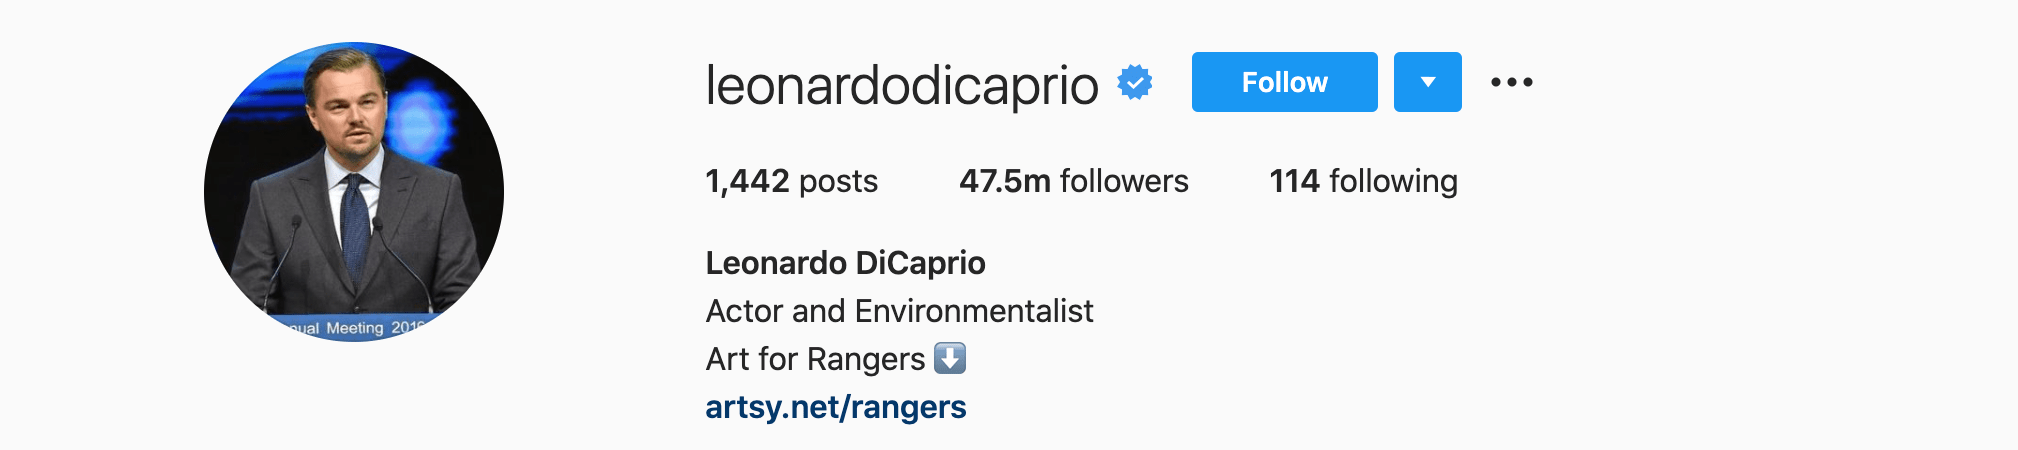 Top Instagram Influencers - LEONARDO DICAPRIO